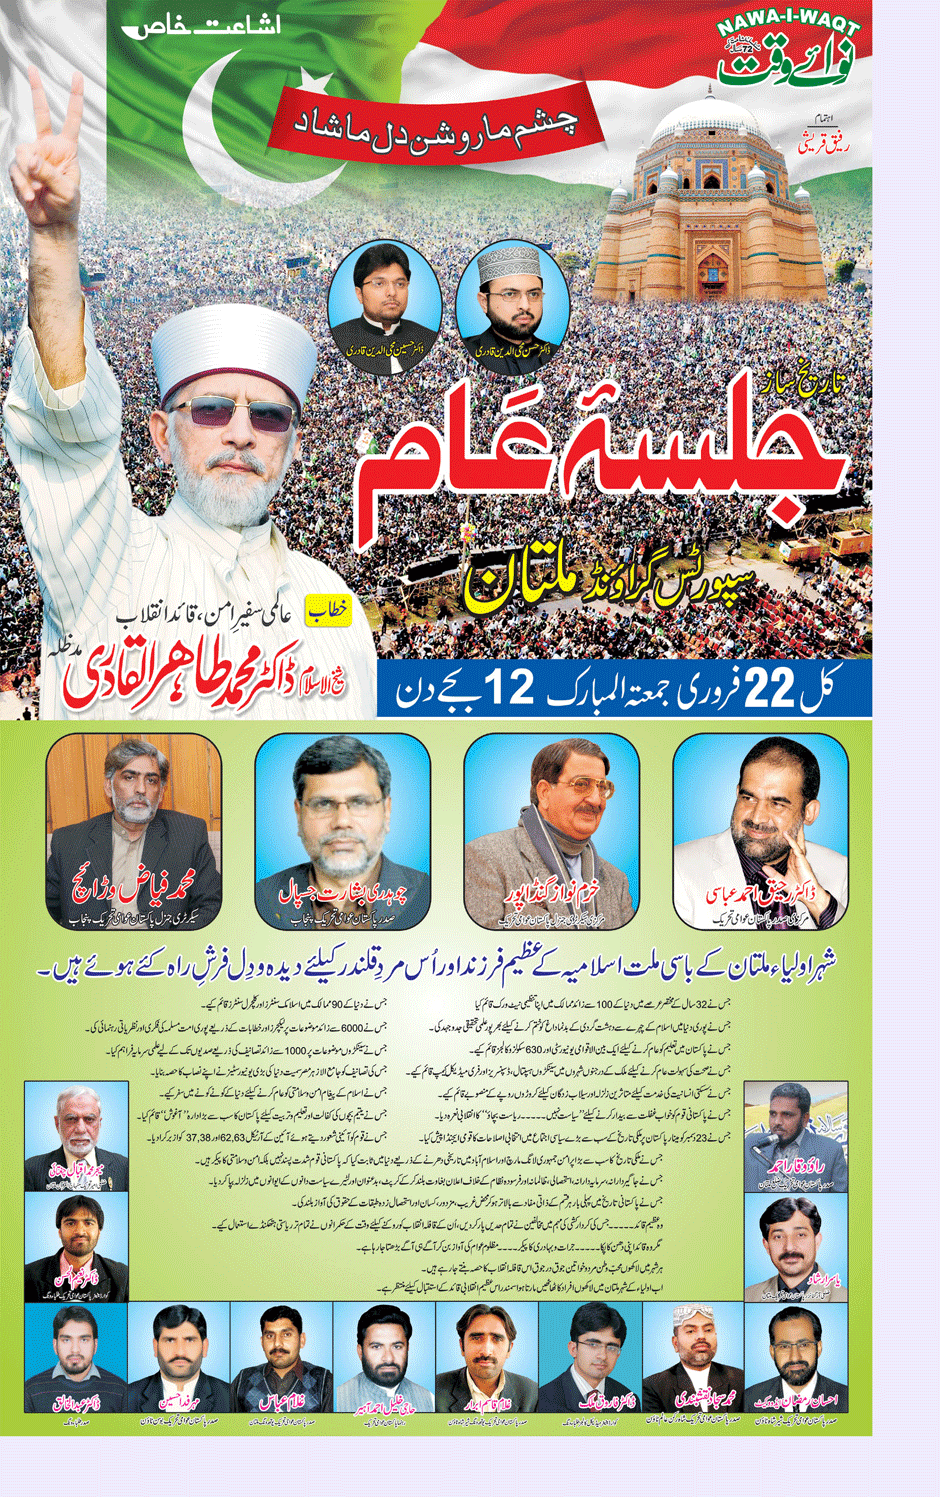 Minhaj-ul-Quran  Print Media Coverage Daily Nawa i Waqt Multan